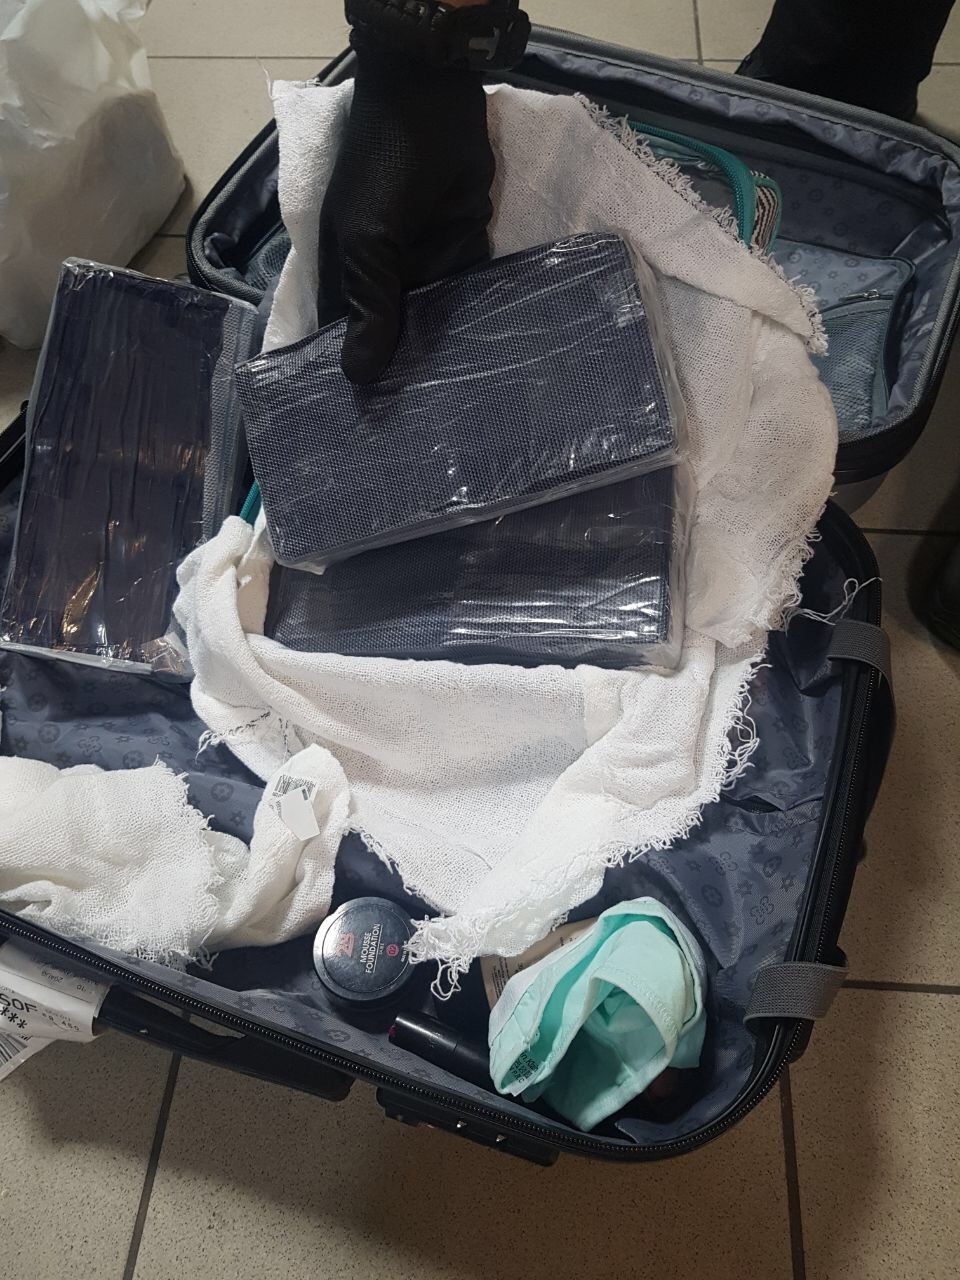 Митничари задържаха 3120 гр. кокаин на Аерогара София